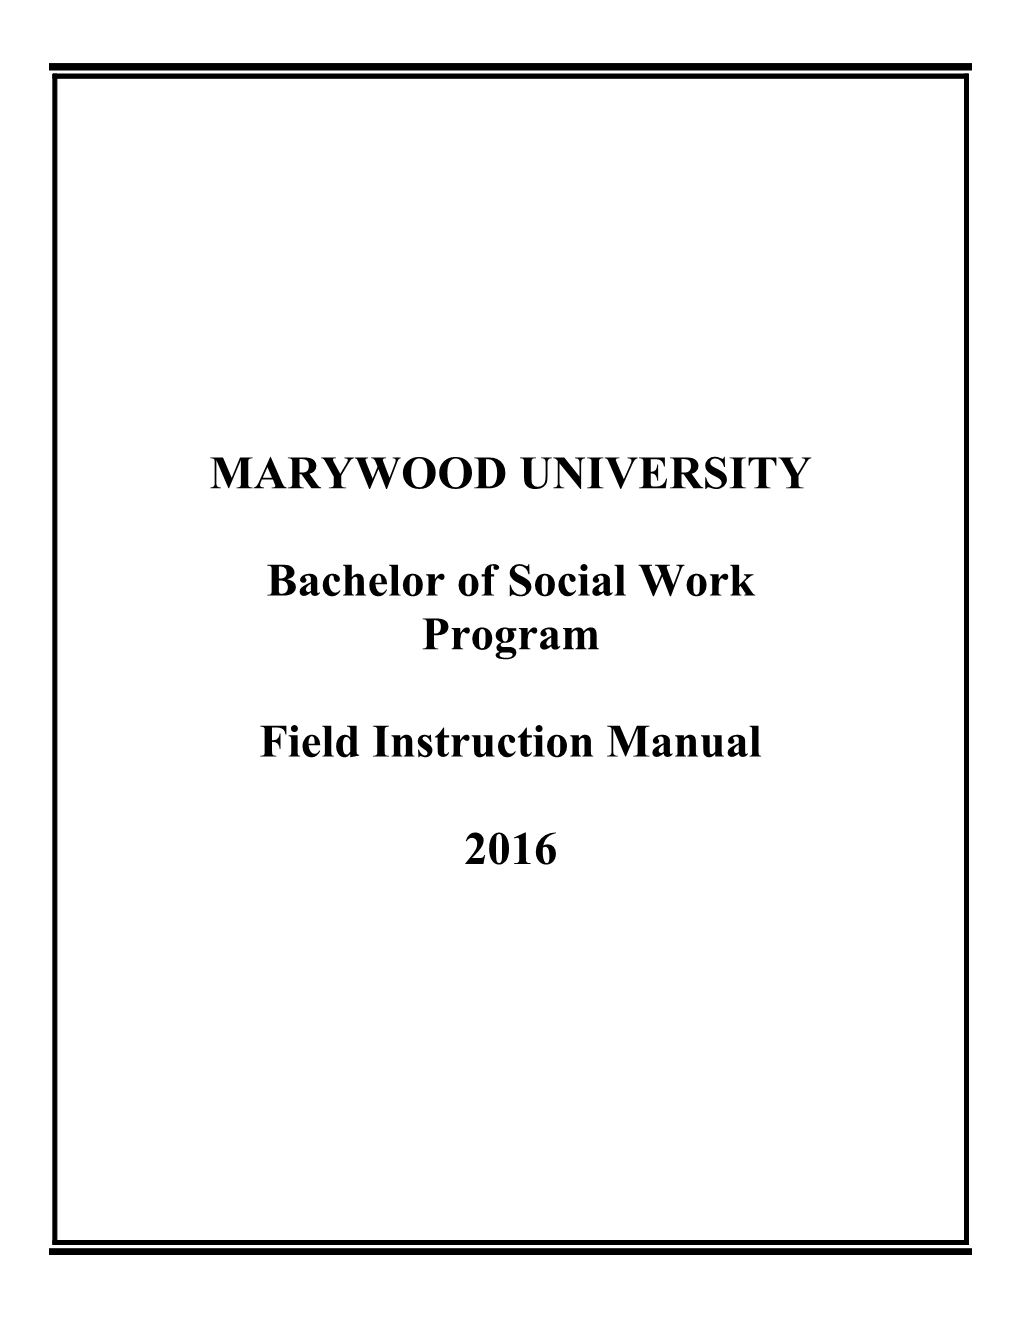 The Bachelor of Social Work Program